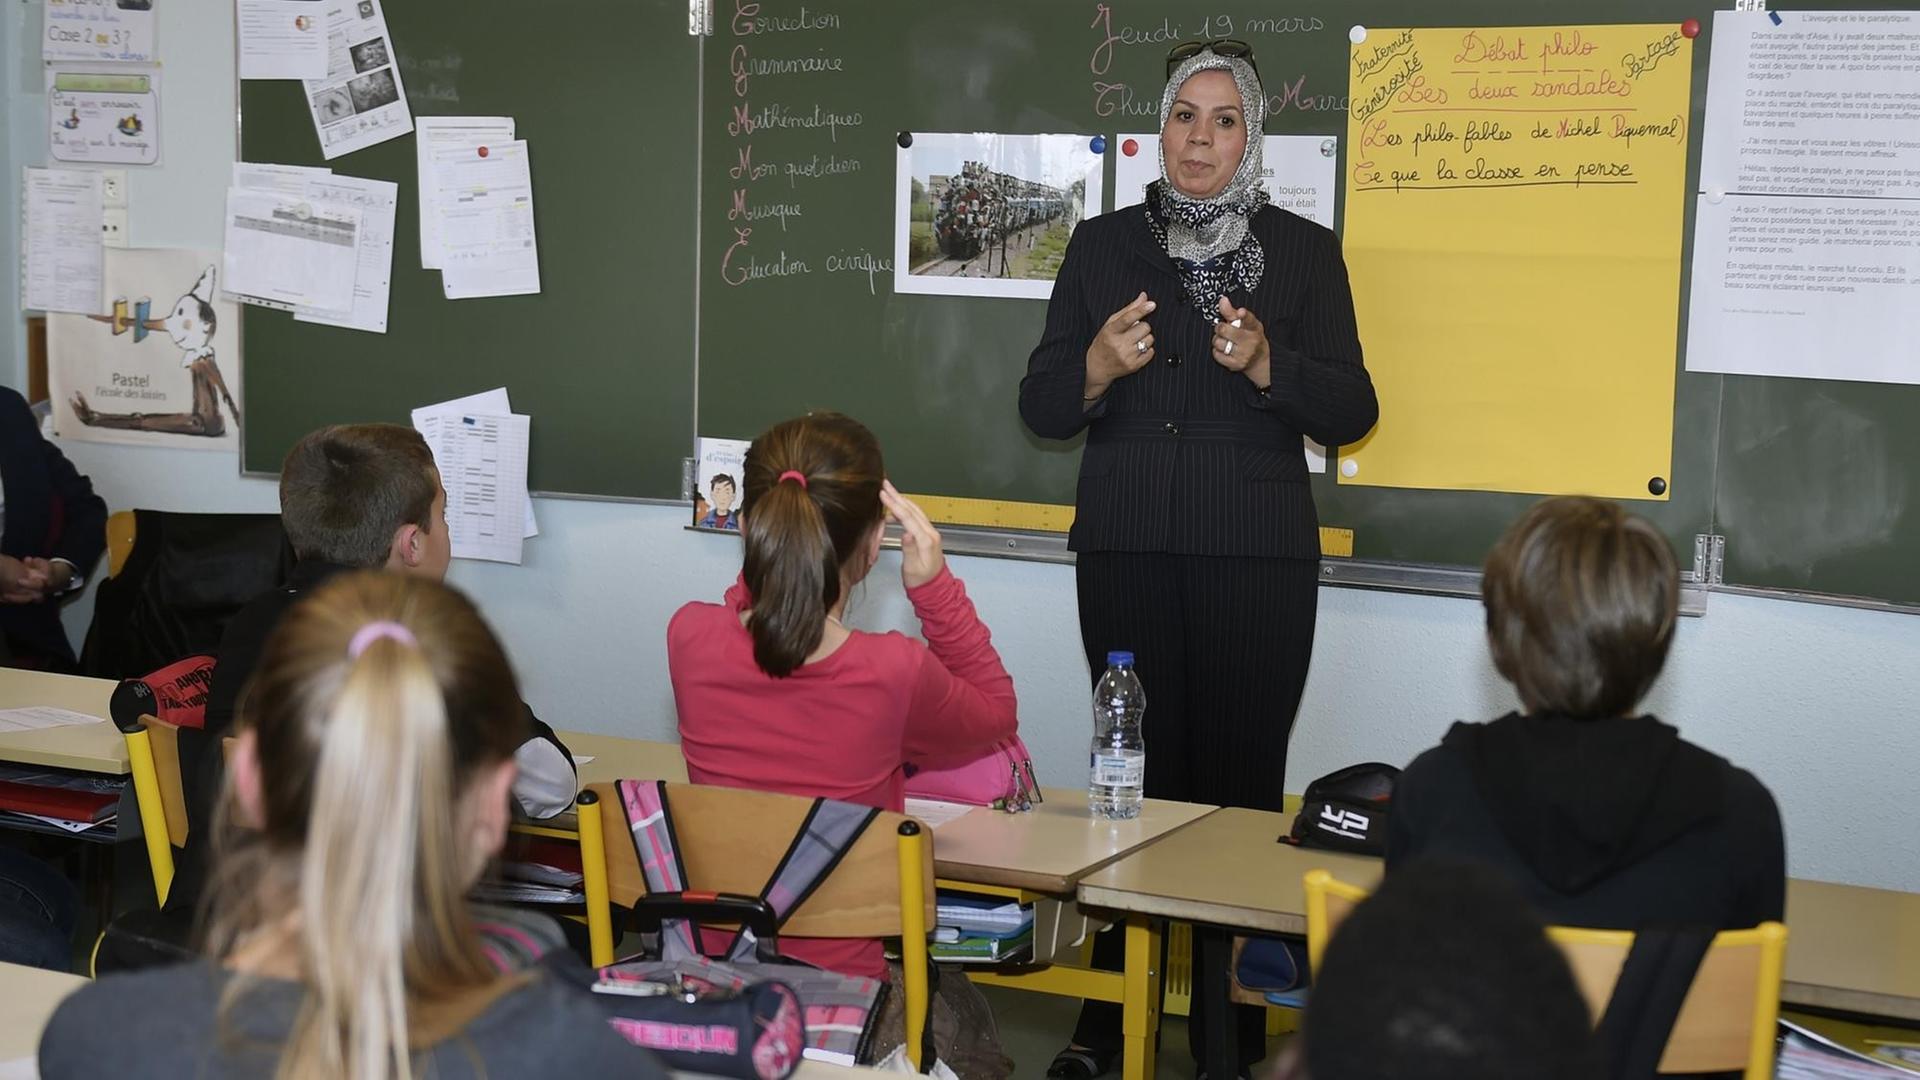 Eine Frau mit Kopftuch steht vor einer Schulklasse und spricht.